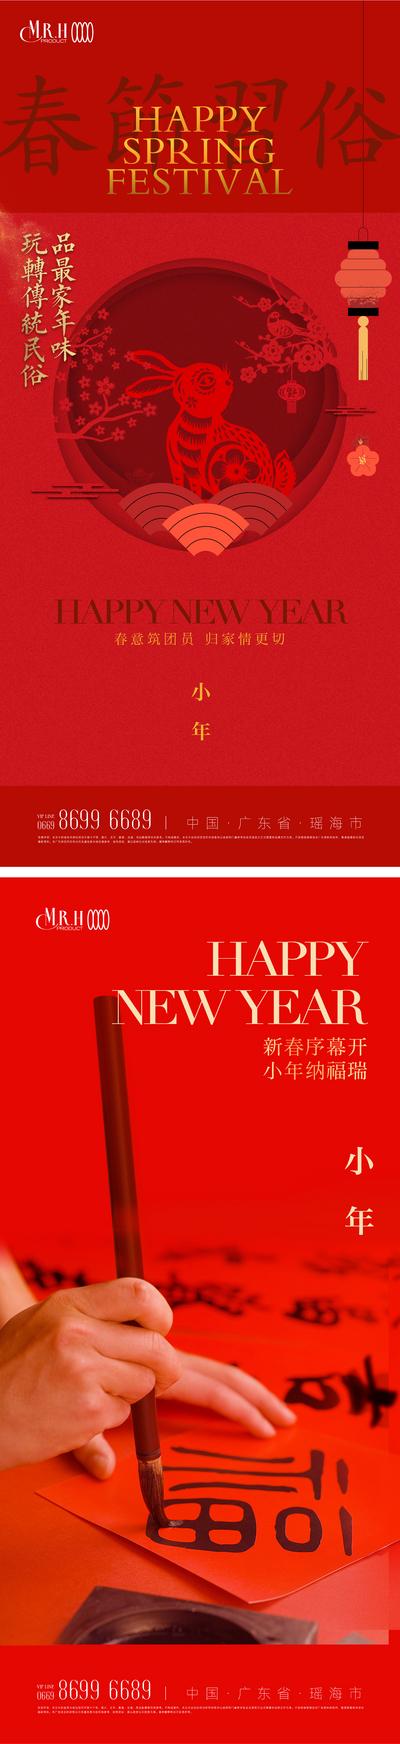 南门网 海报 中国传统节日 春节 年俗 小年 写对联 剪纸 灯笼 福字 活动